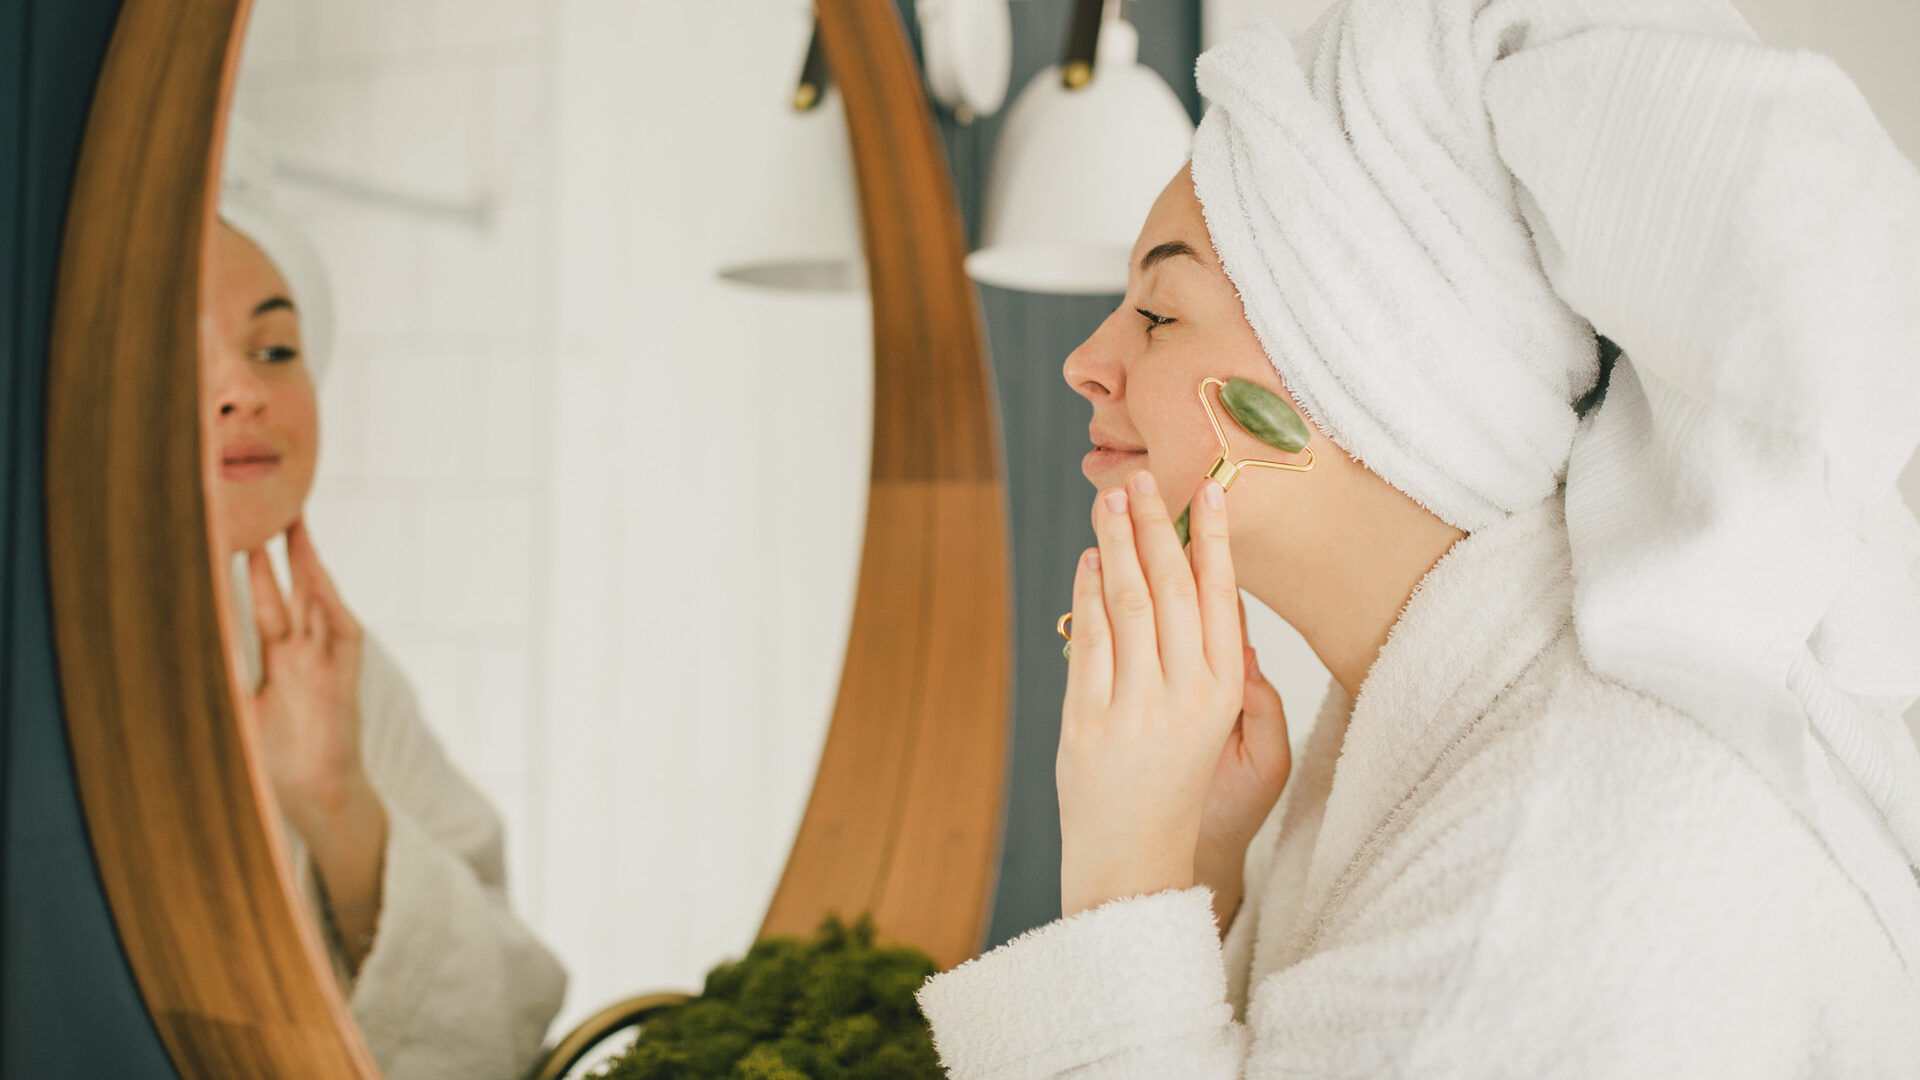 Waarom een huidallergie soms wordt veroorzaakt door verkeerd gebruik van cosmetica